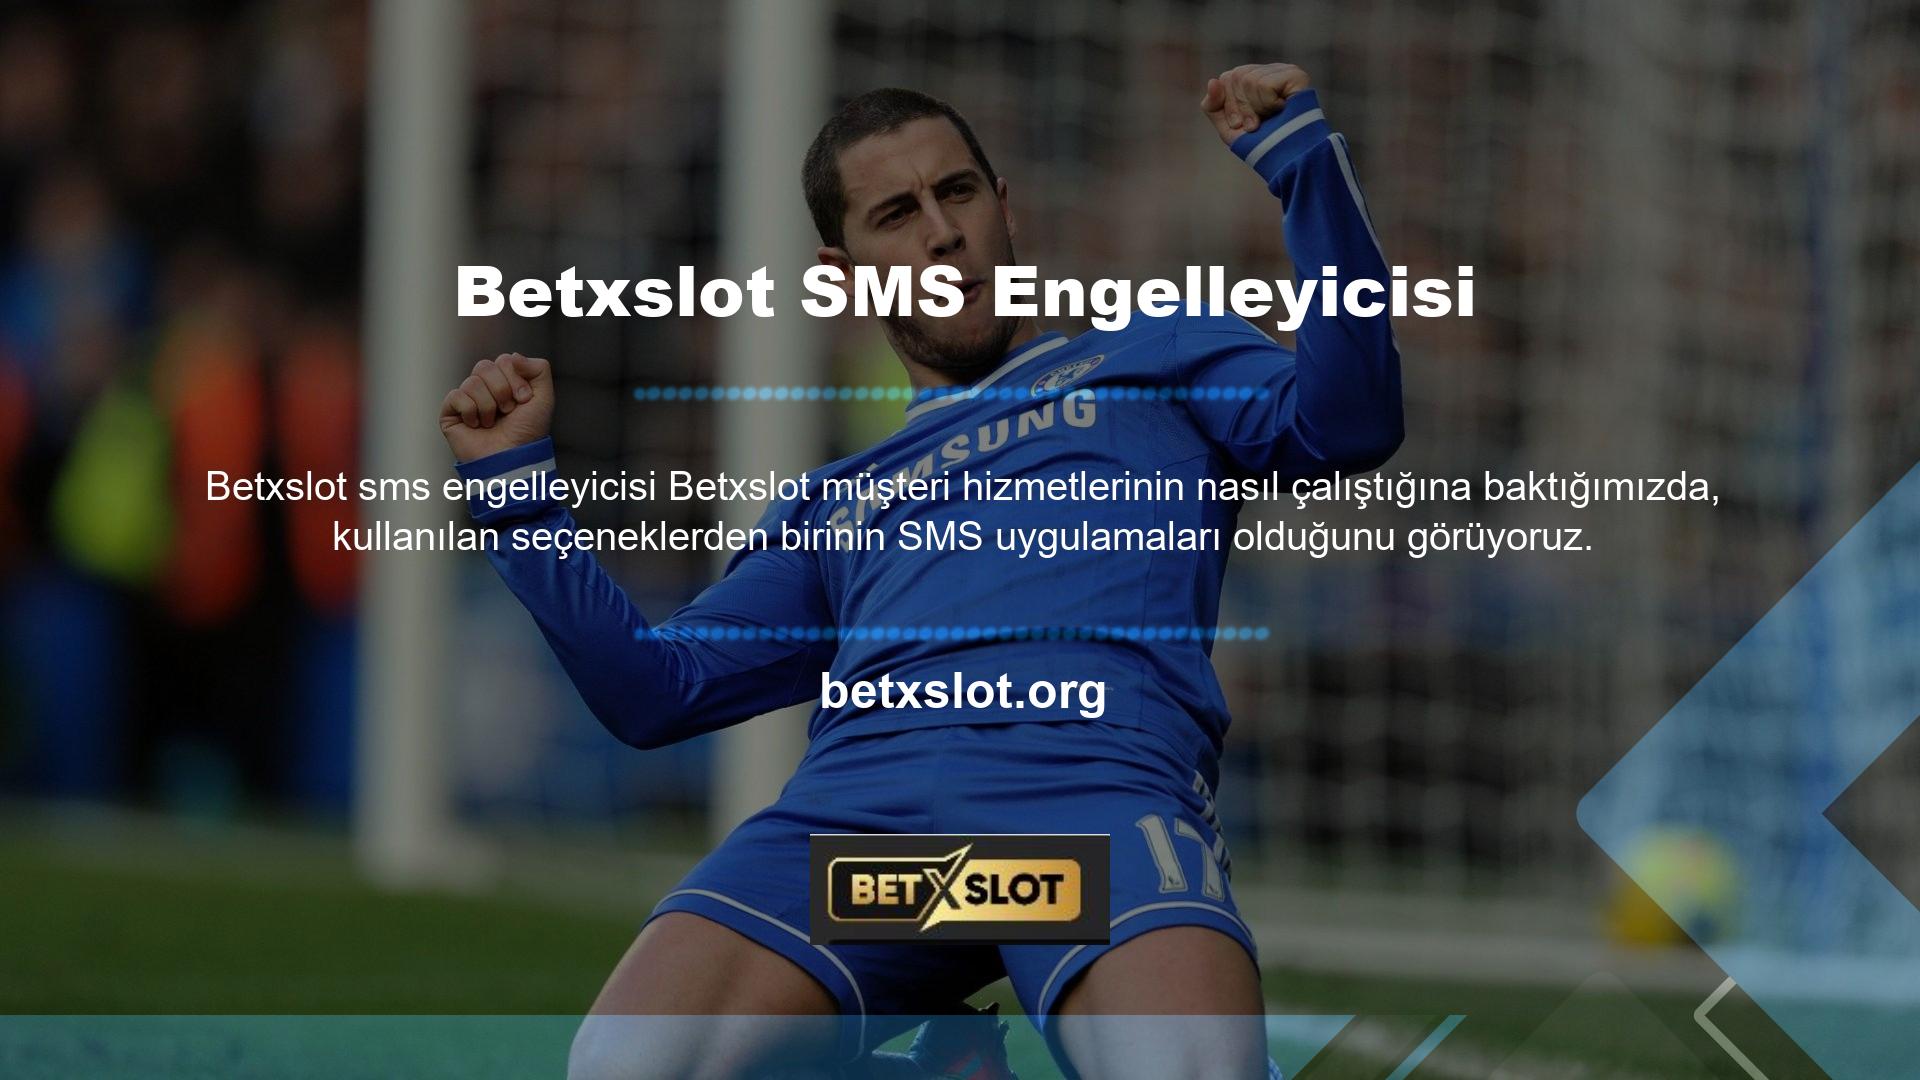 SMS uygulaması Betxslot müşteri hizmetleri tarafından cep telefonu numaranıza gönderilen SMS'tir